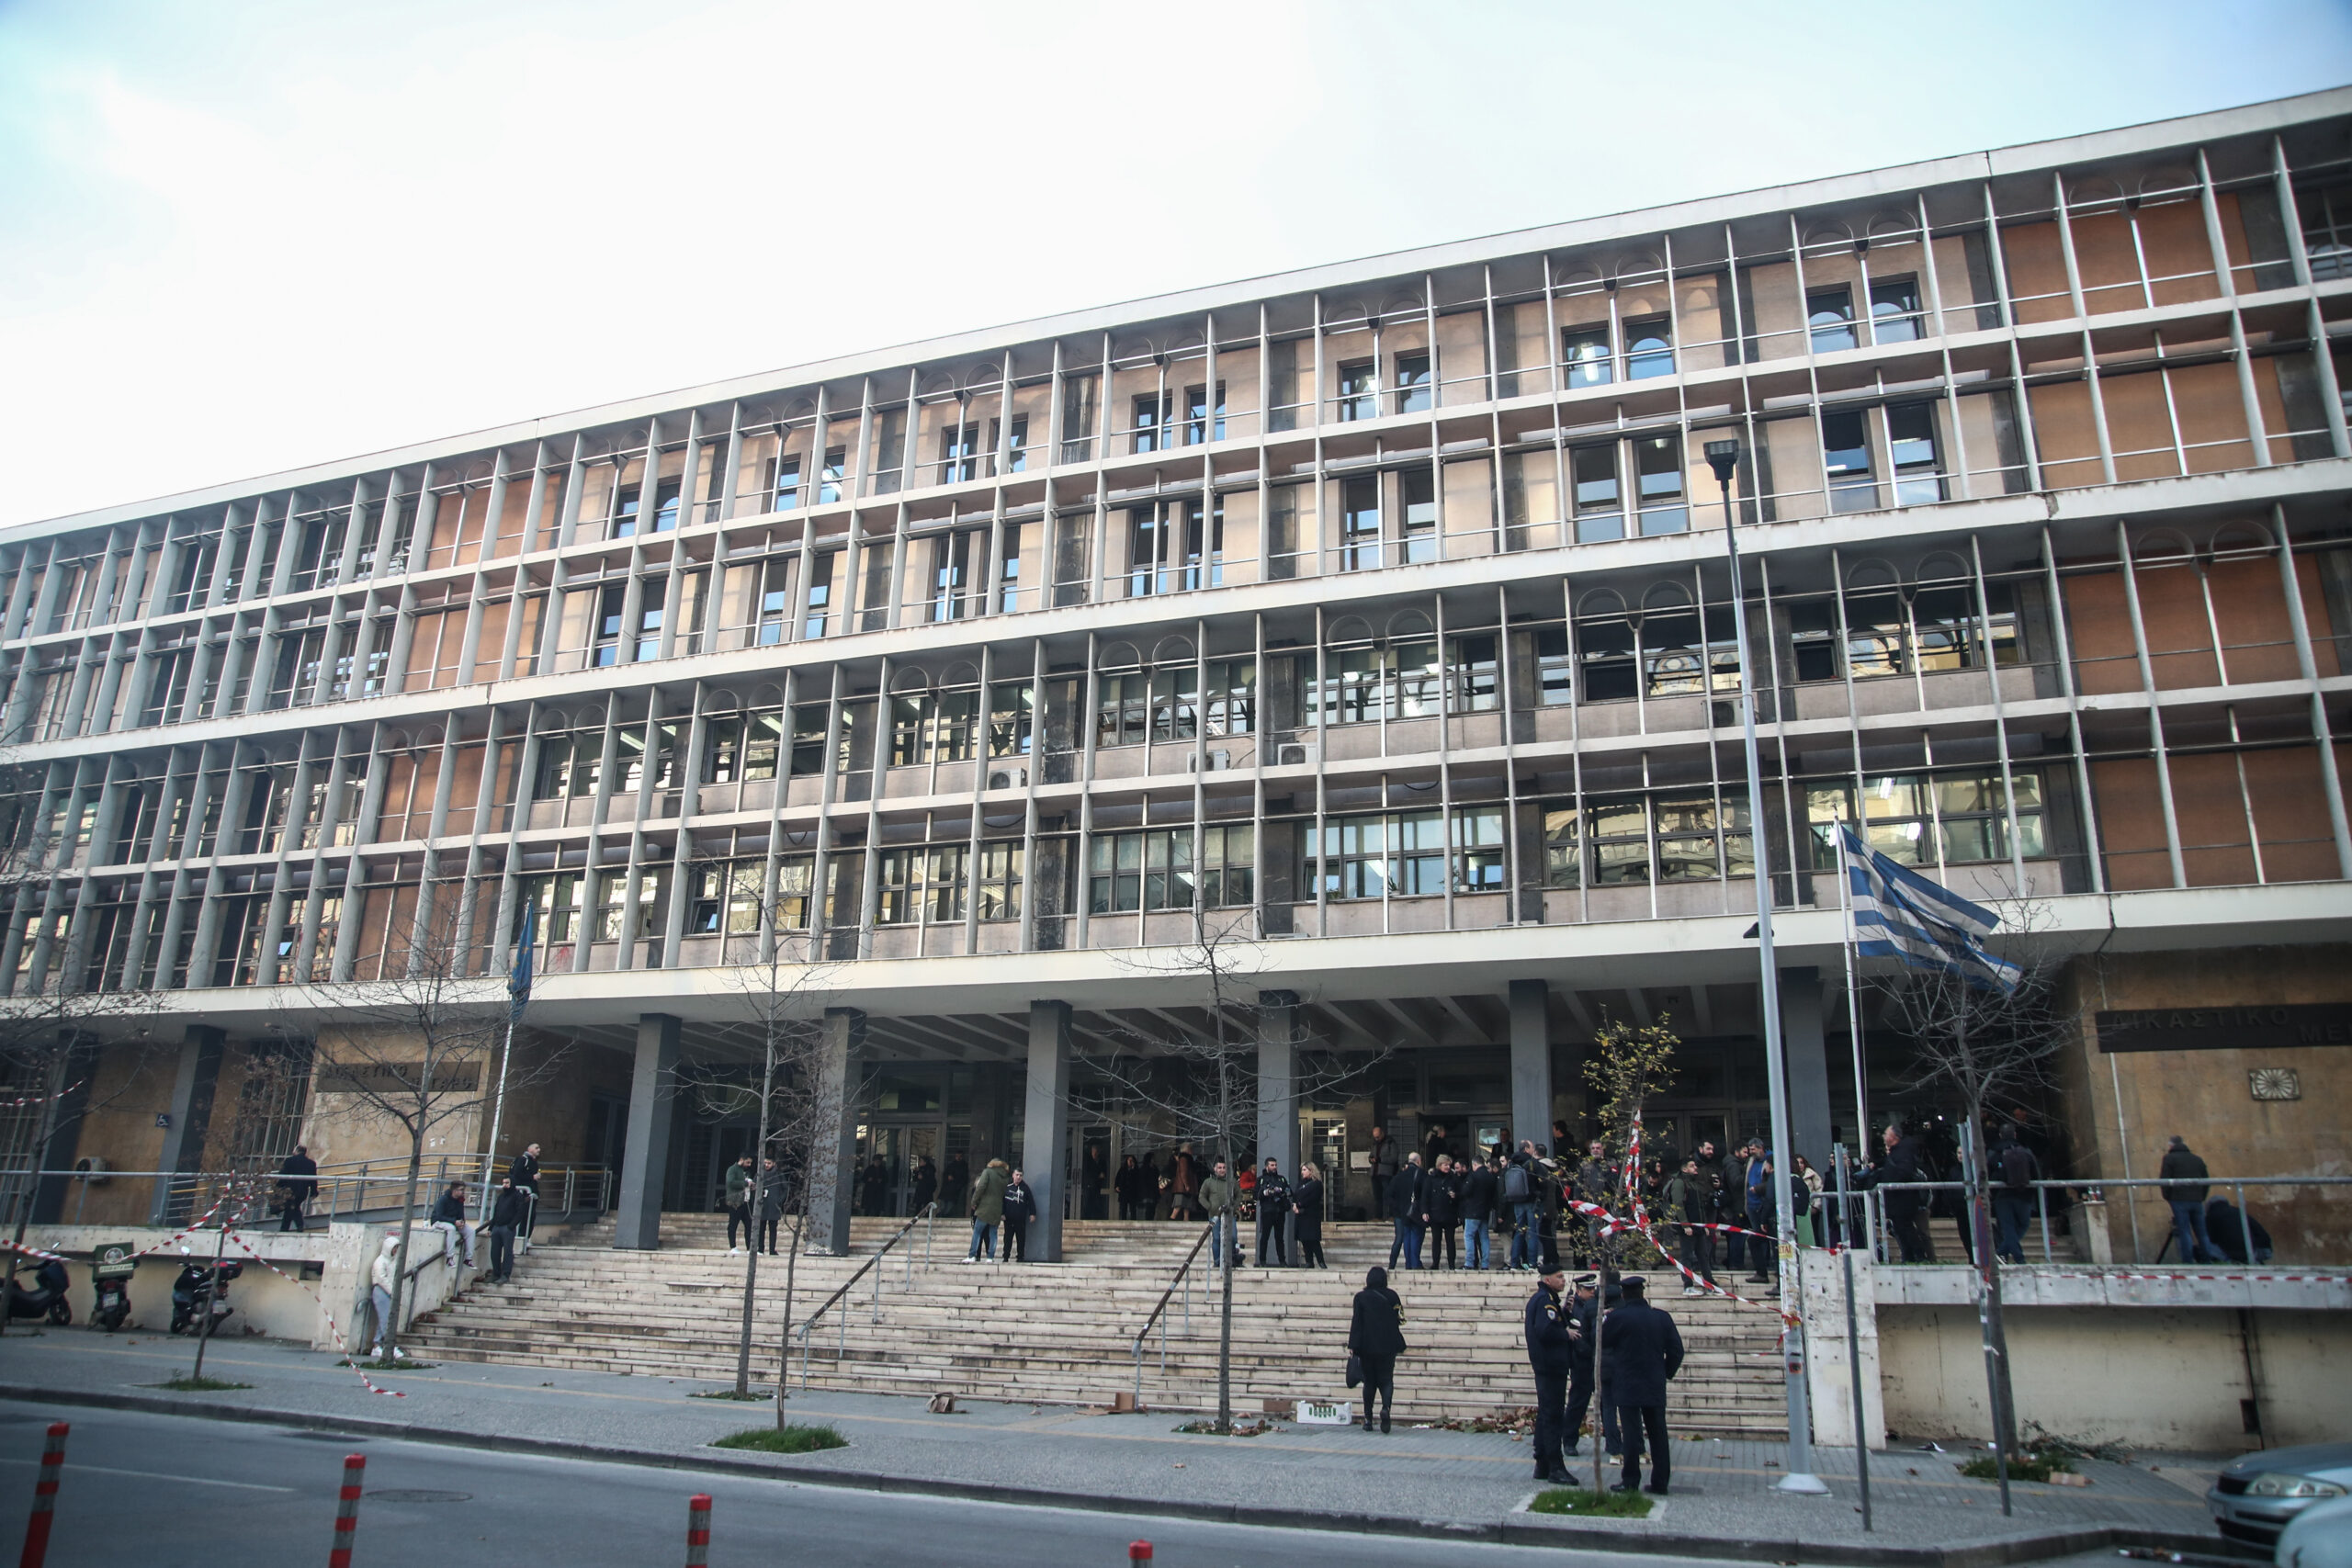 Θεσσαλονίκη: Αθωώθηκαν μέλη Σχολικής Επιτροπής για την πτώση ανεμιστήρα σε αίθουσα δημοτικού